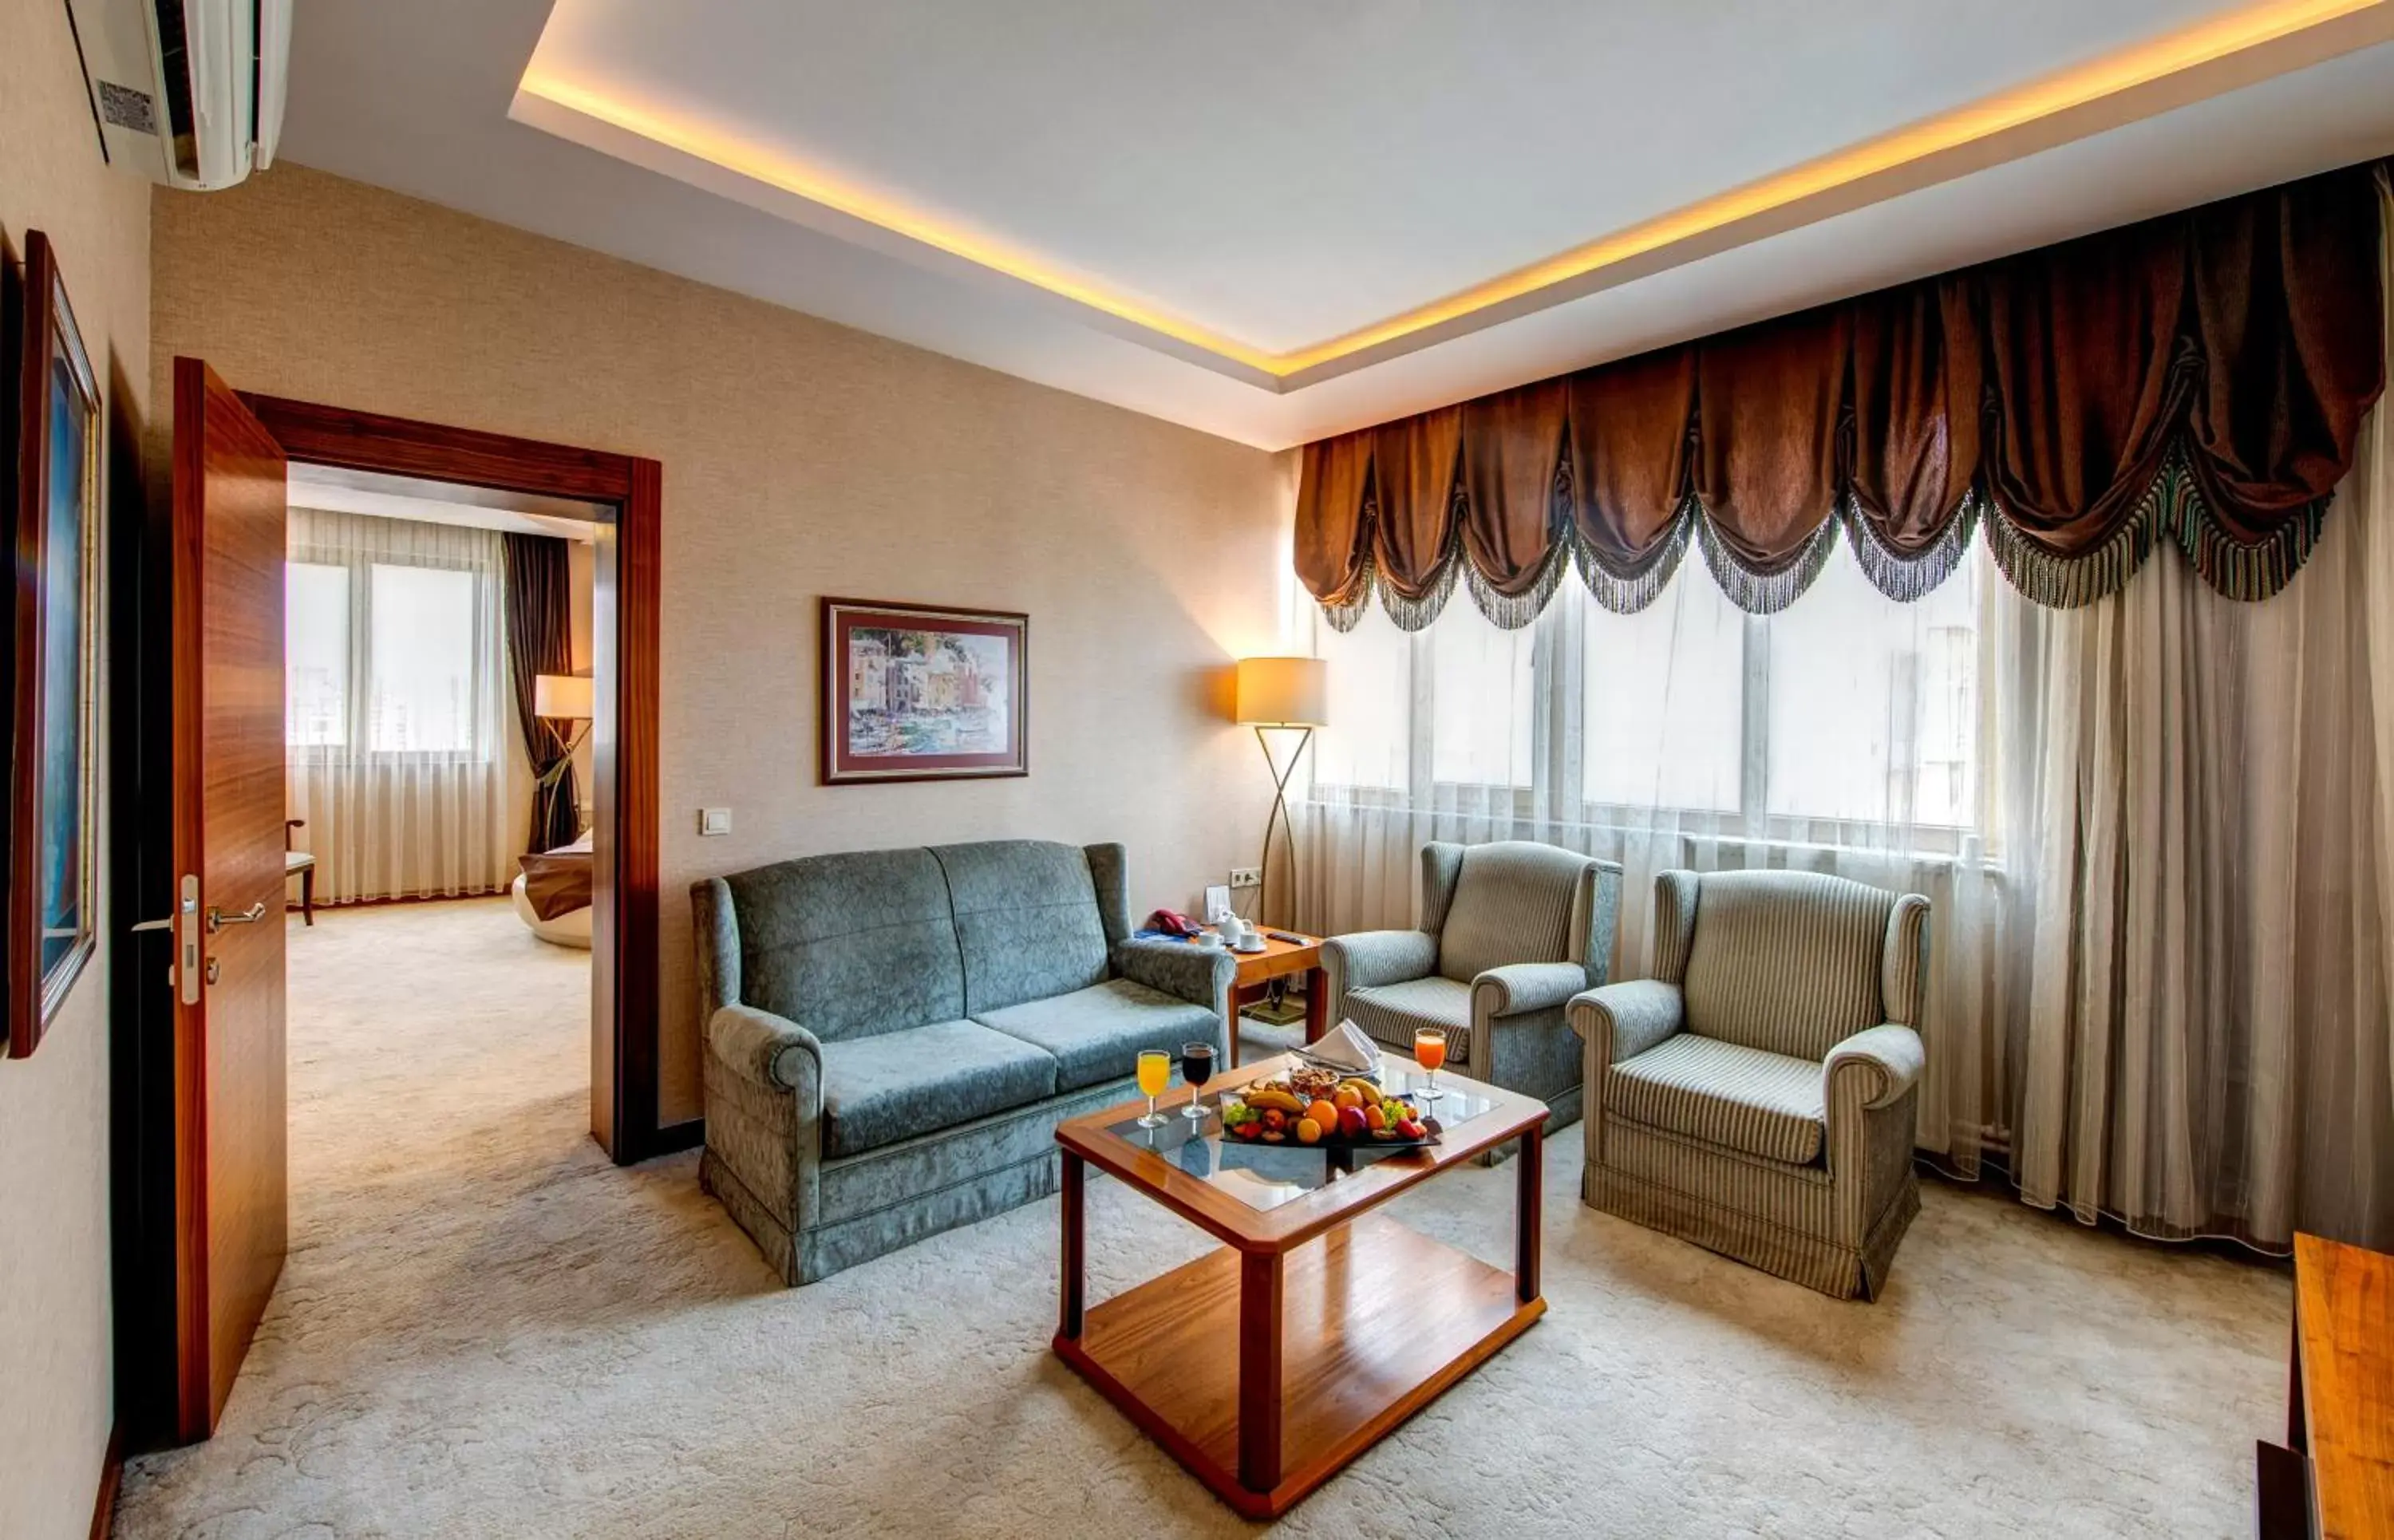 TV and multimedia, Seating Area in Bera Konya Hotel